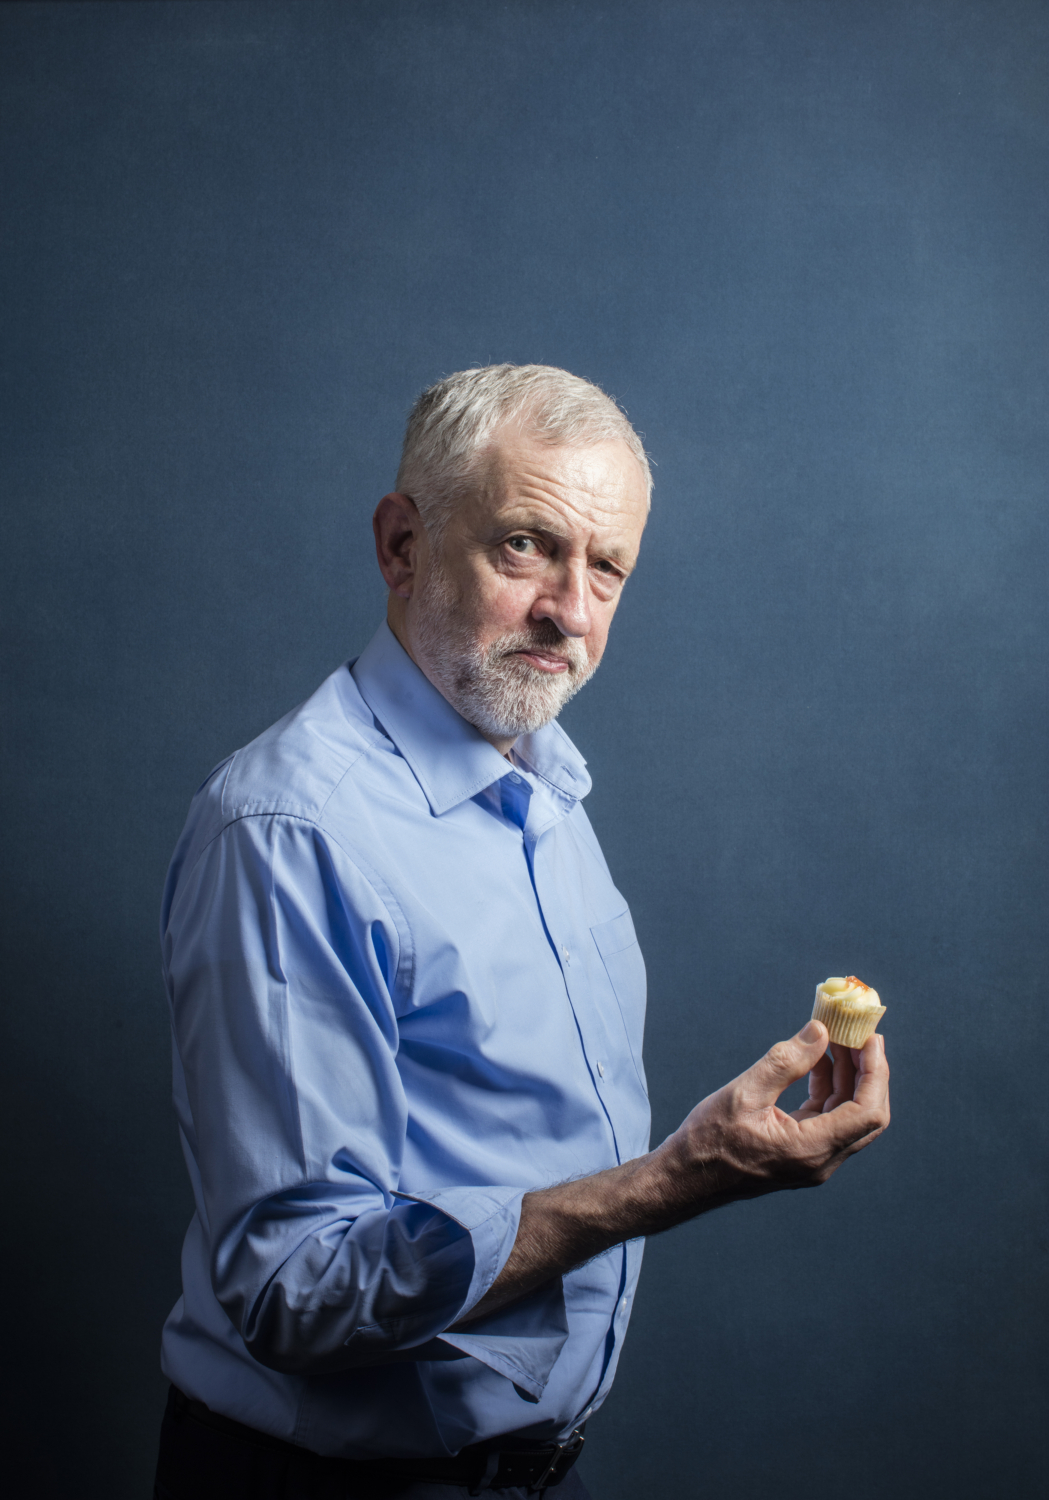 Jeremy Corbyn, David Levene Photography